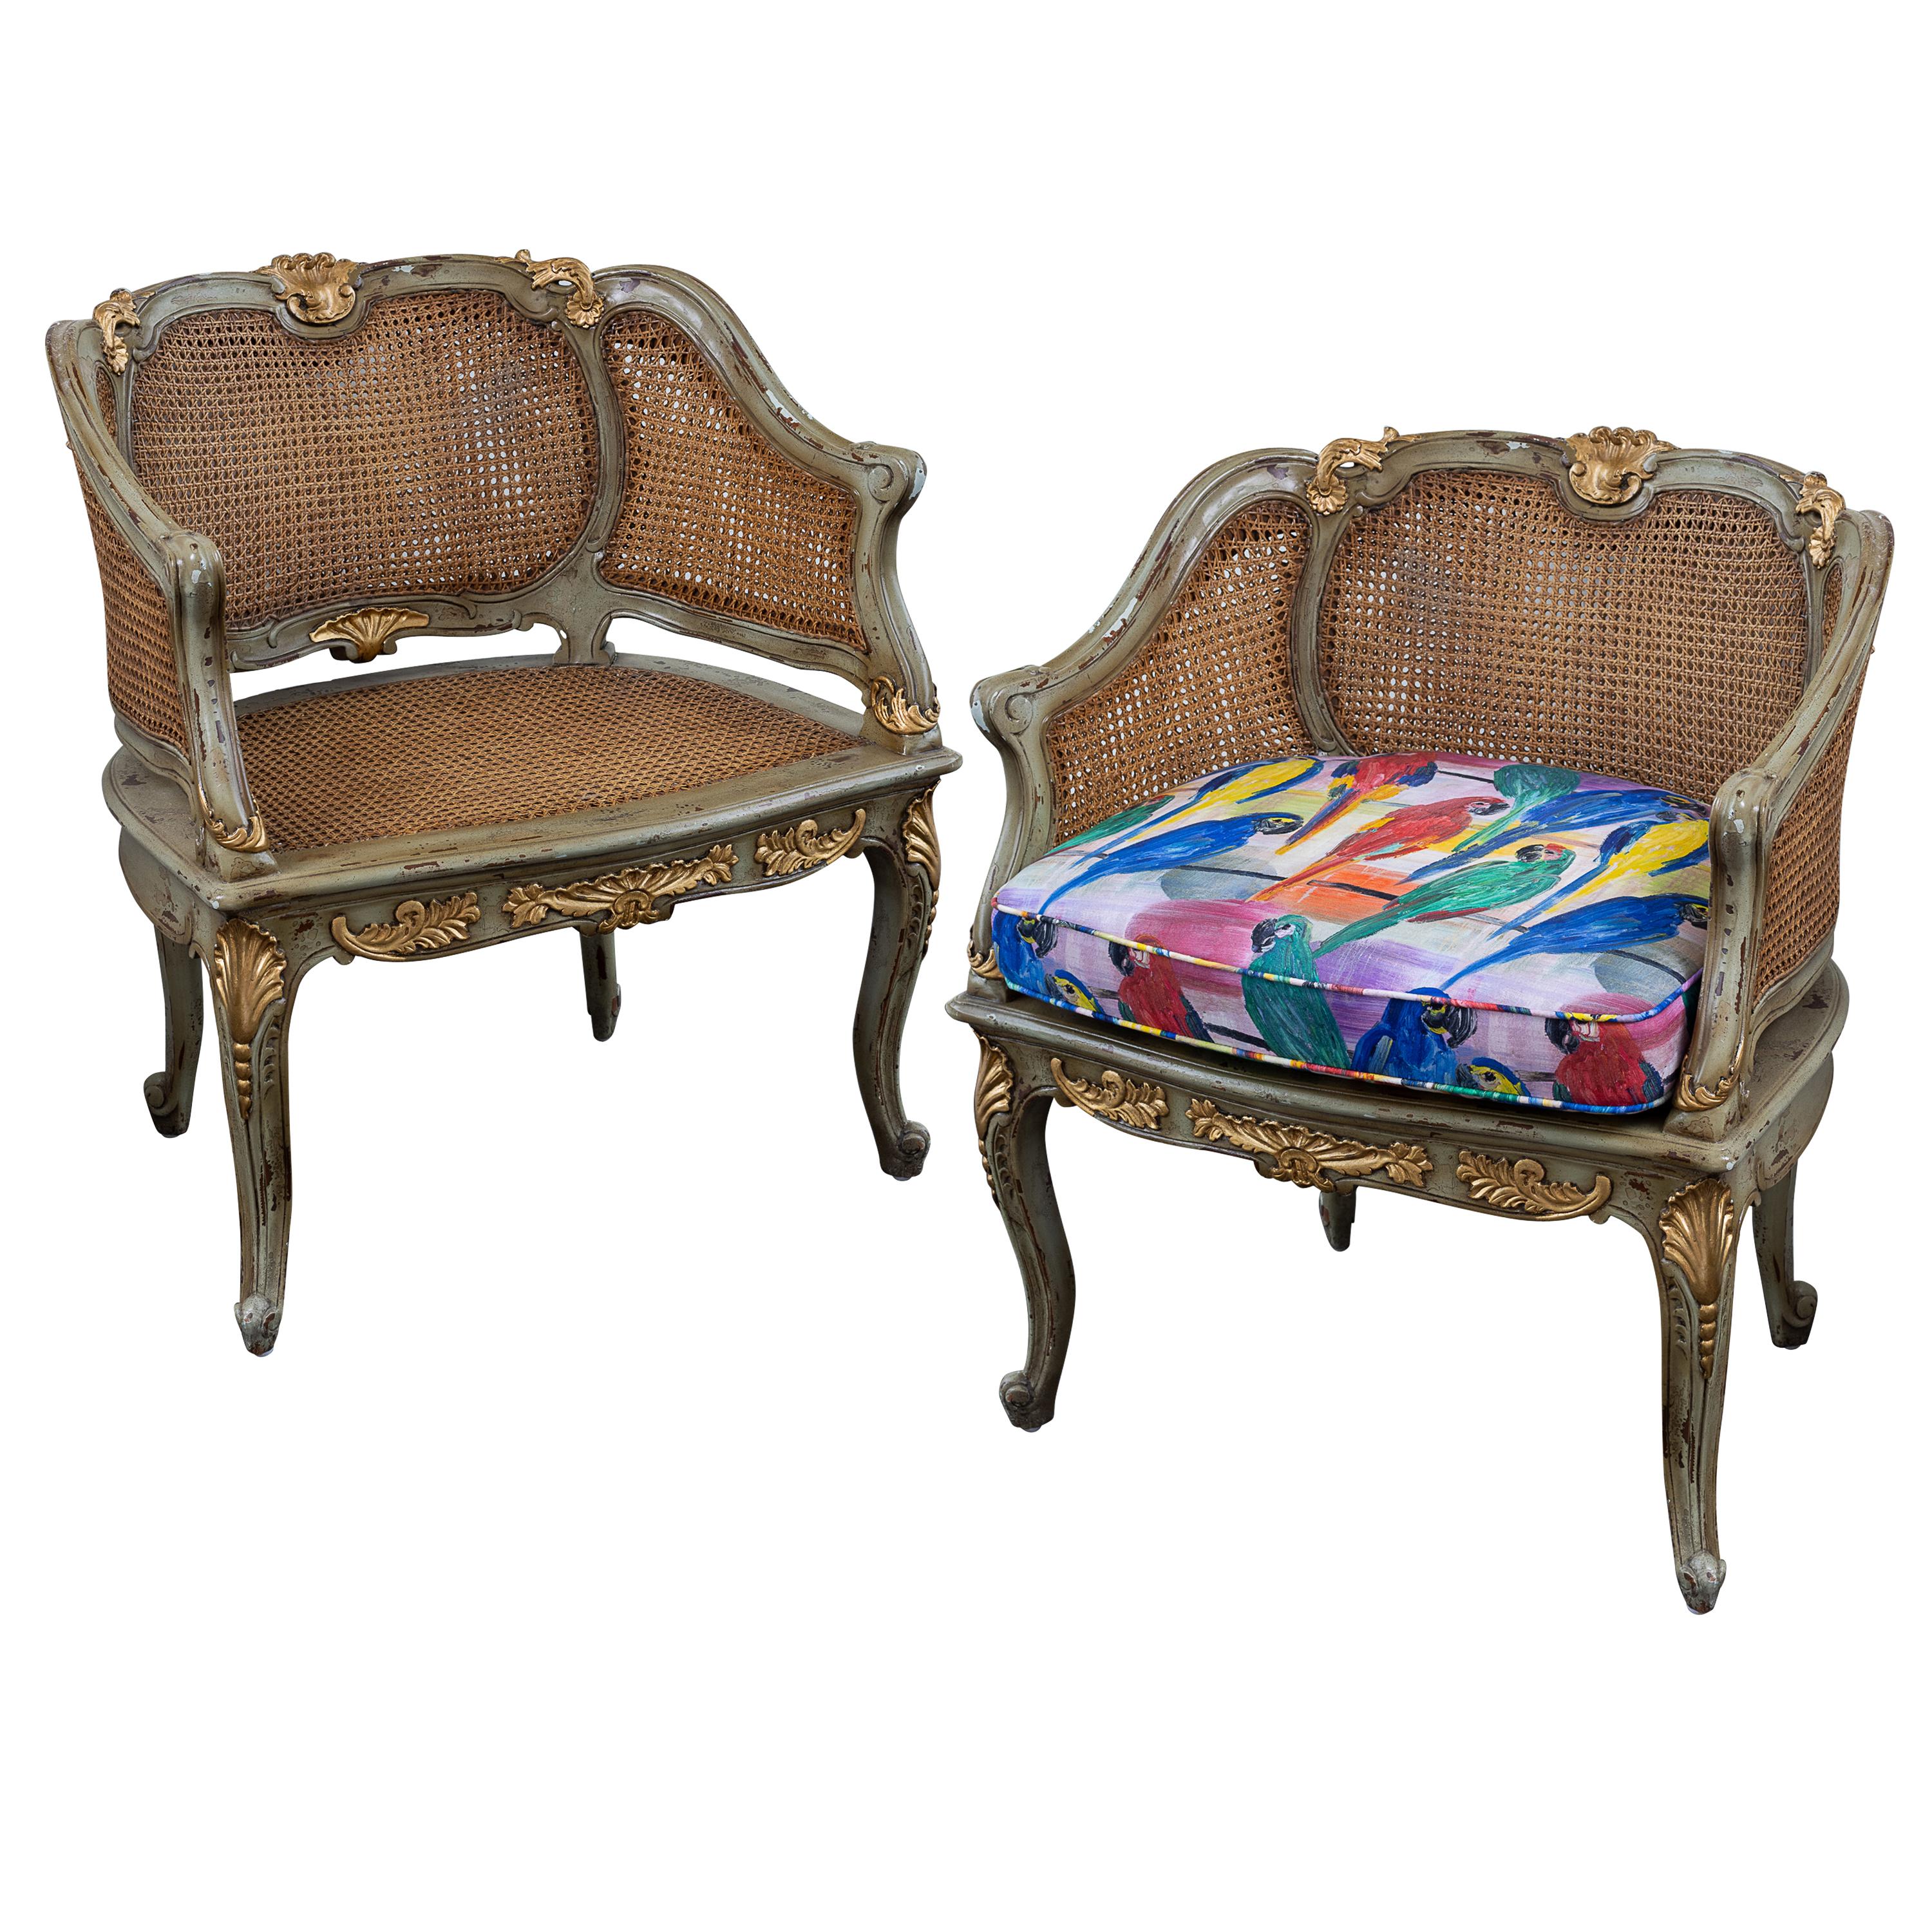 Paar französische Bergere-Stühle im Stil Louis XV aus dem frühen 19. Jahrhundert mit Rückenlehne und Sitzfläche aus Rohrgeflecht. Handbemaltes Holz mit Blattgoldschnitzereien. Sitzkissen in Hunt Slonems Hunt's Parrots Print. Die Stühle können